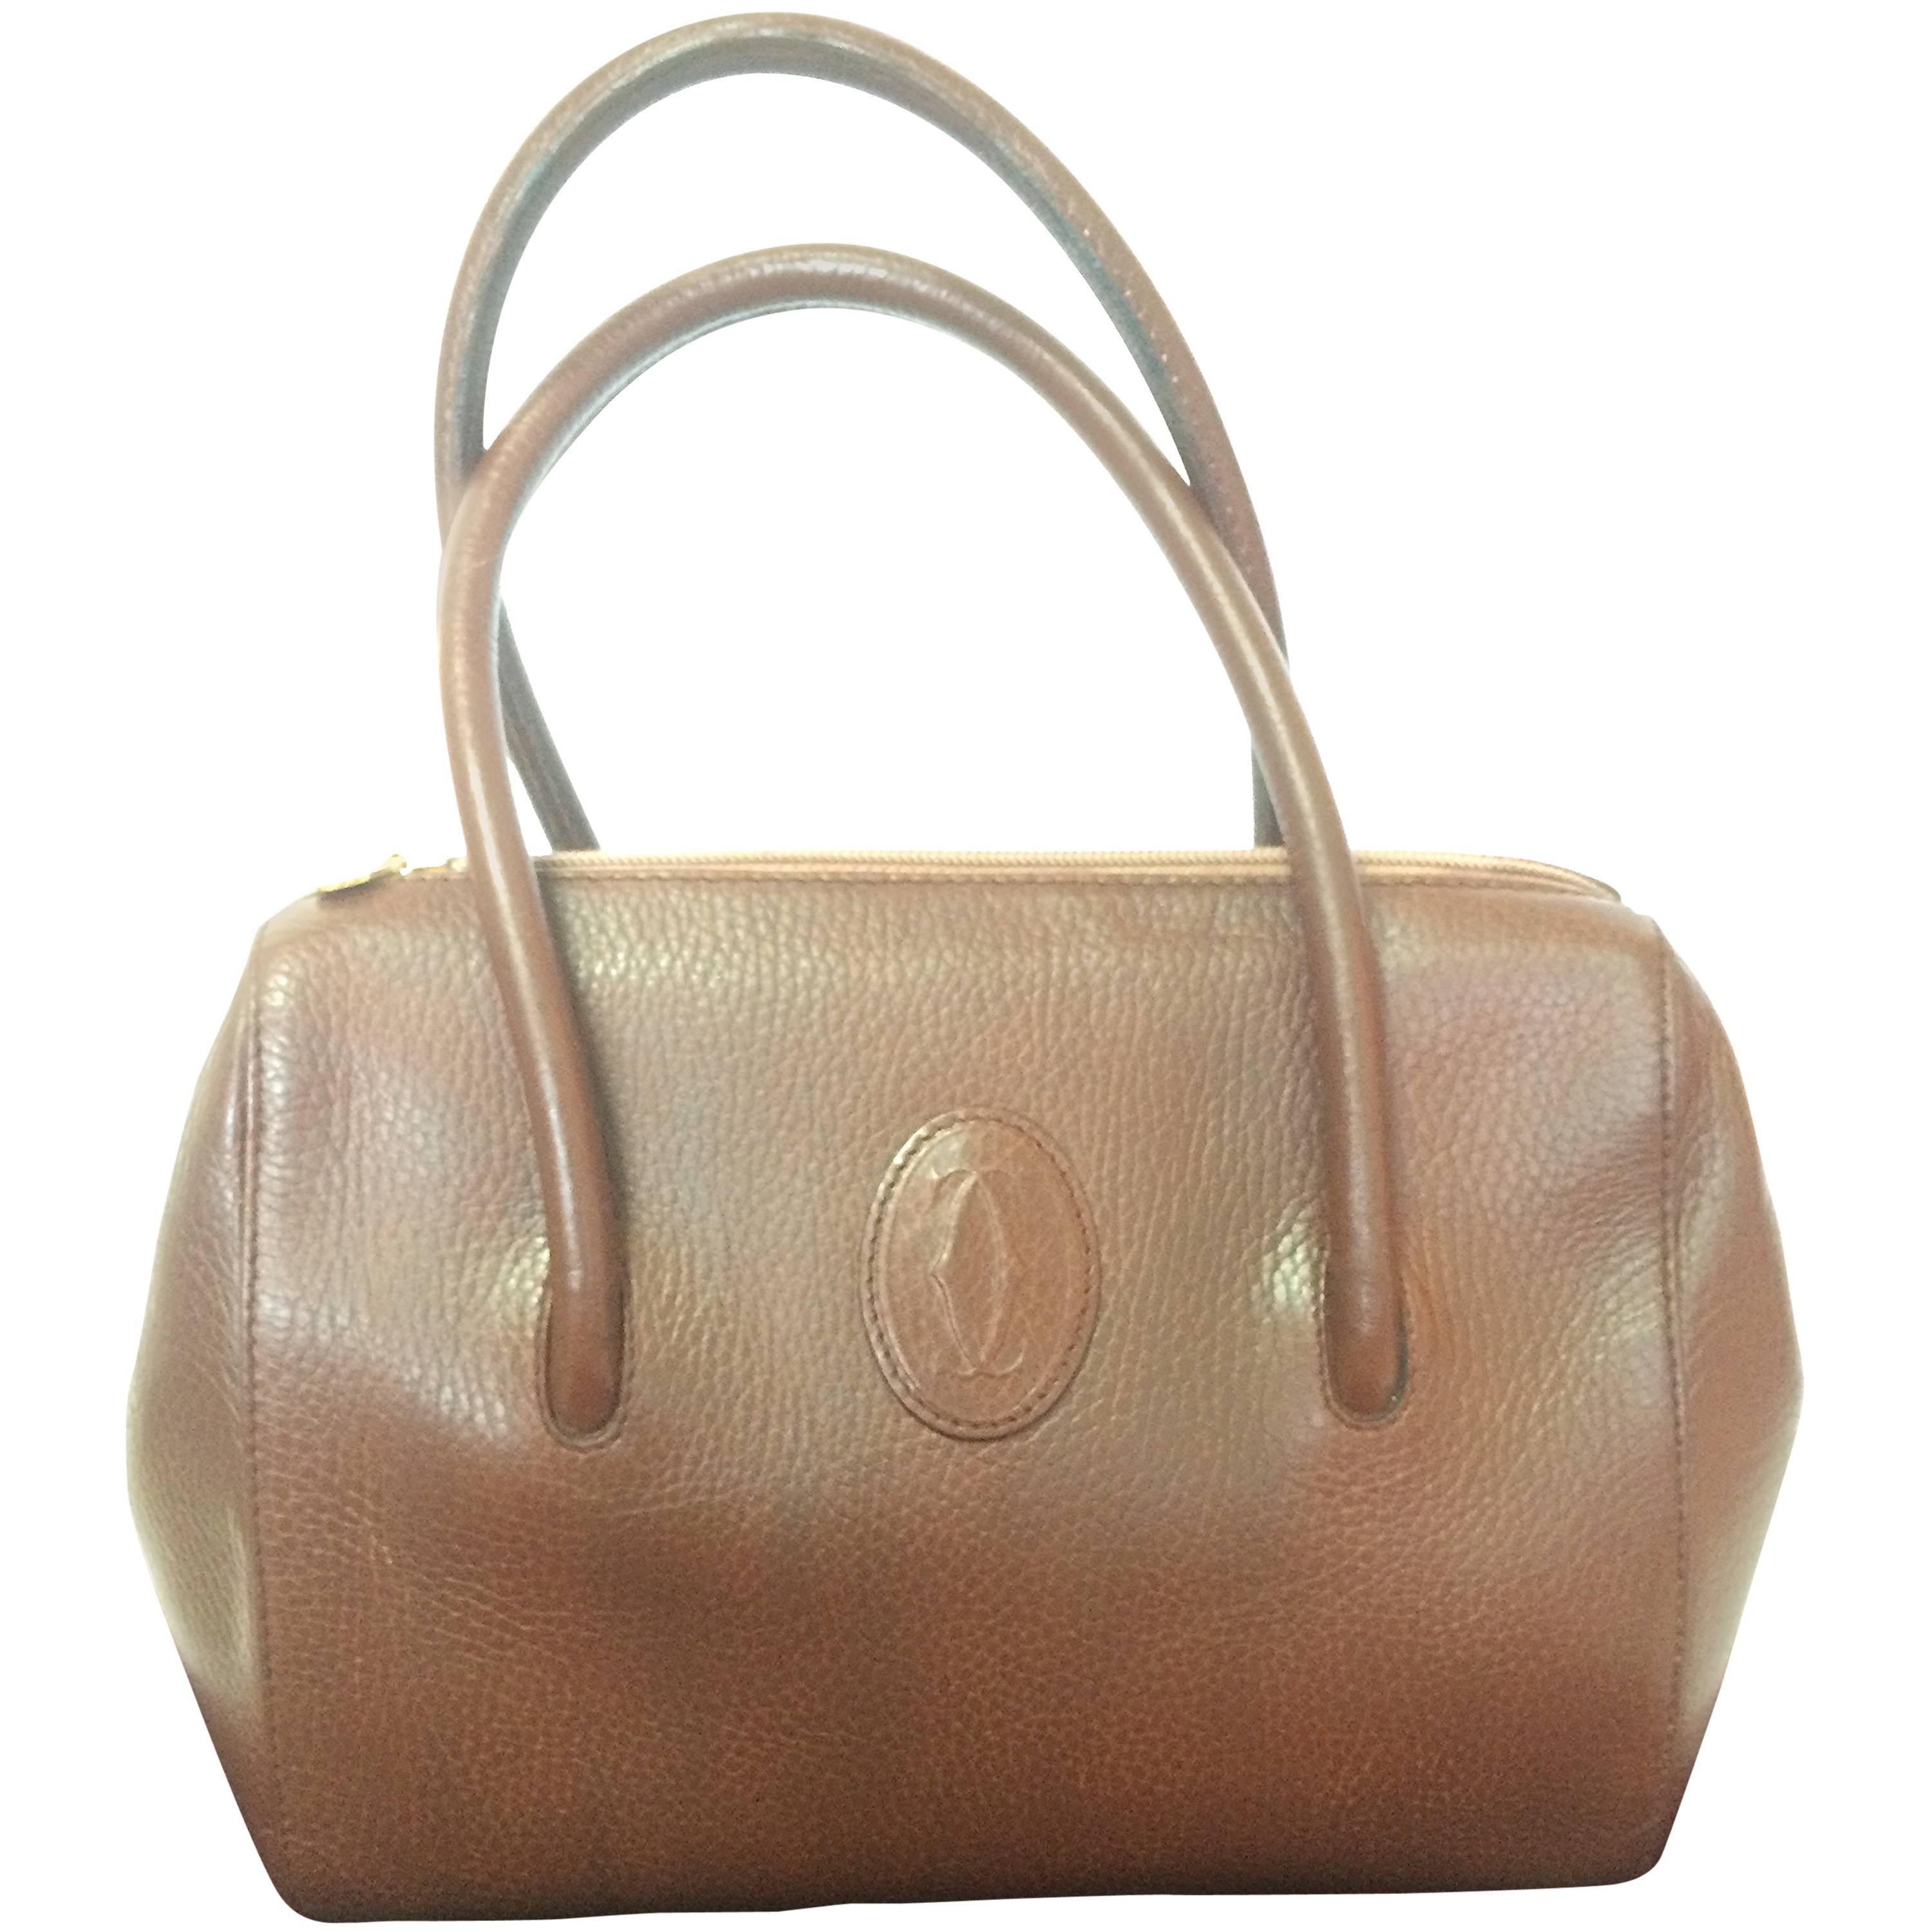 Vintage Cartier classic brown leather handbag with logo.  les must de Cartier